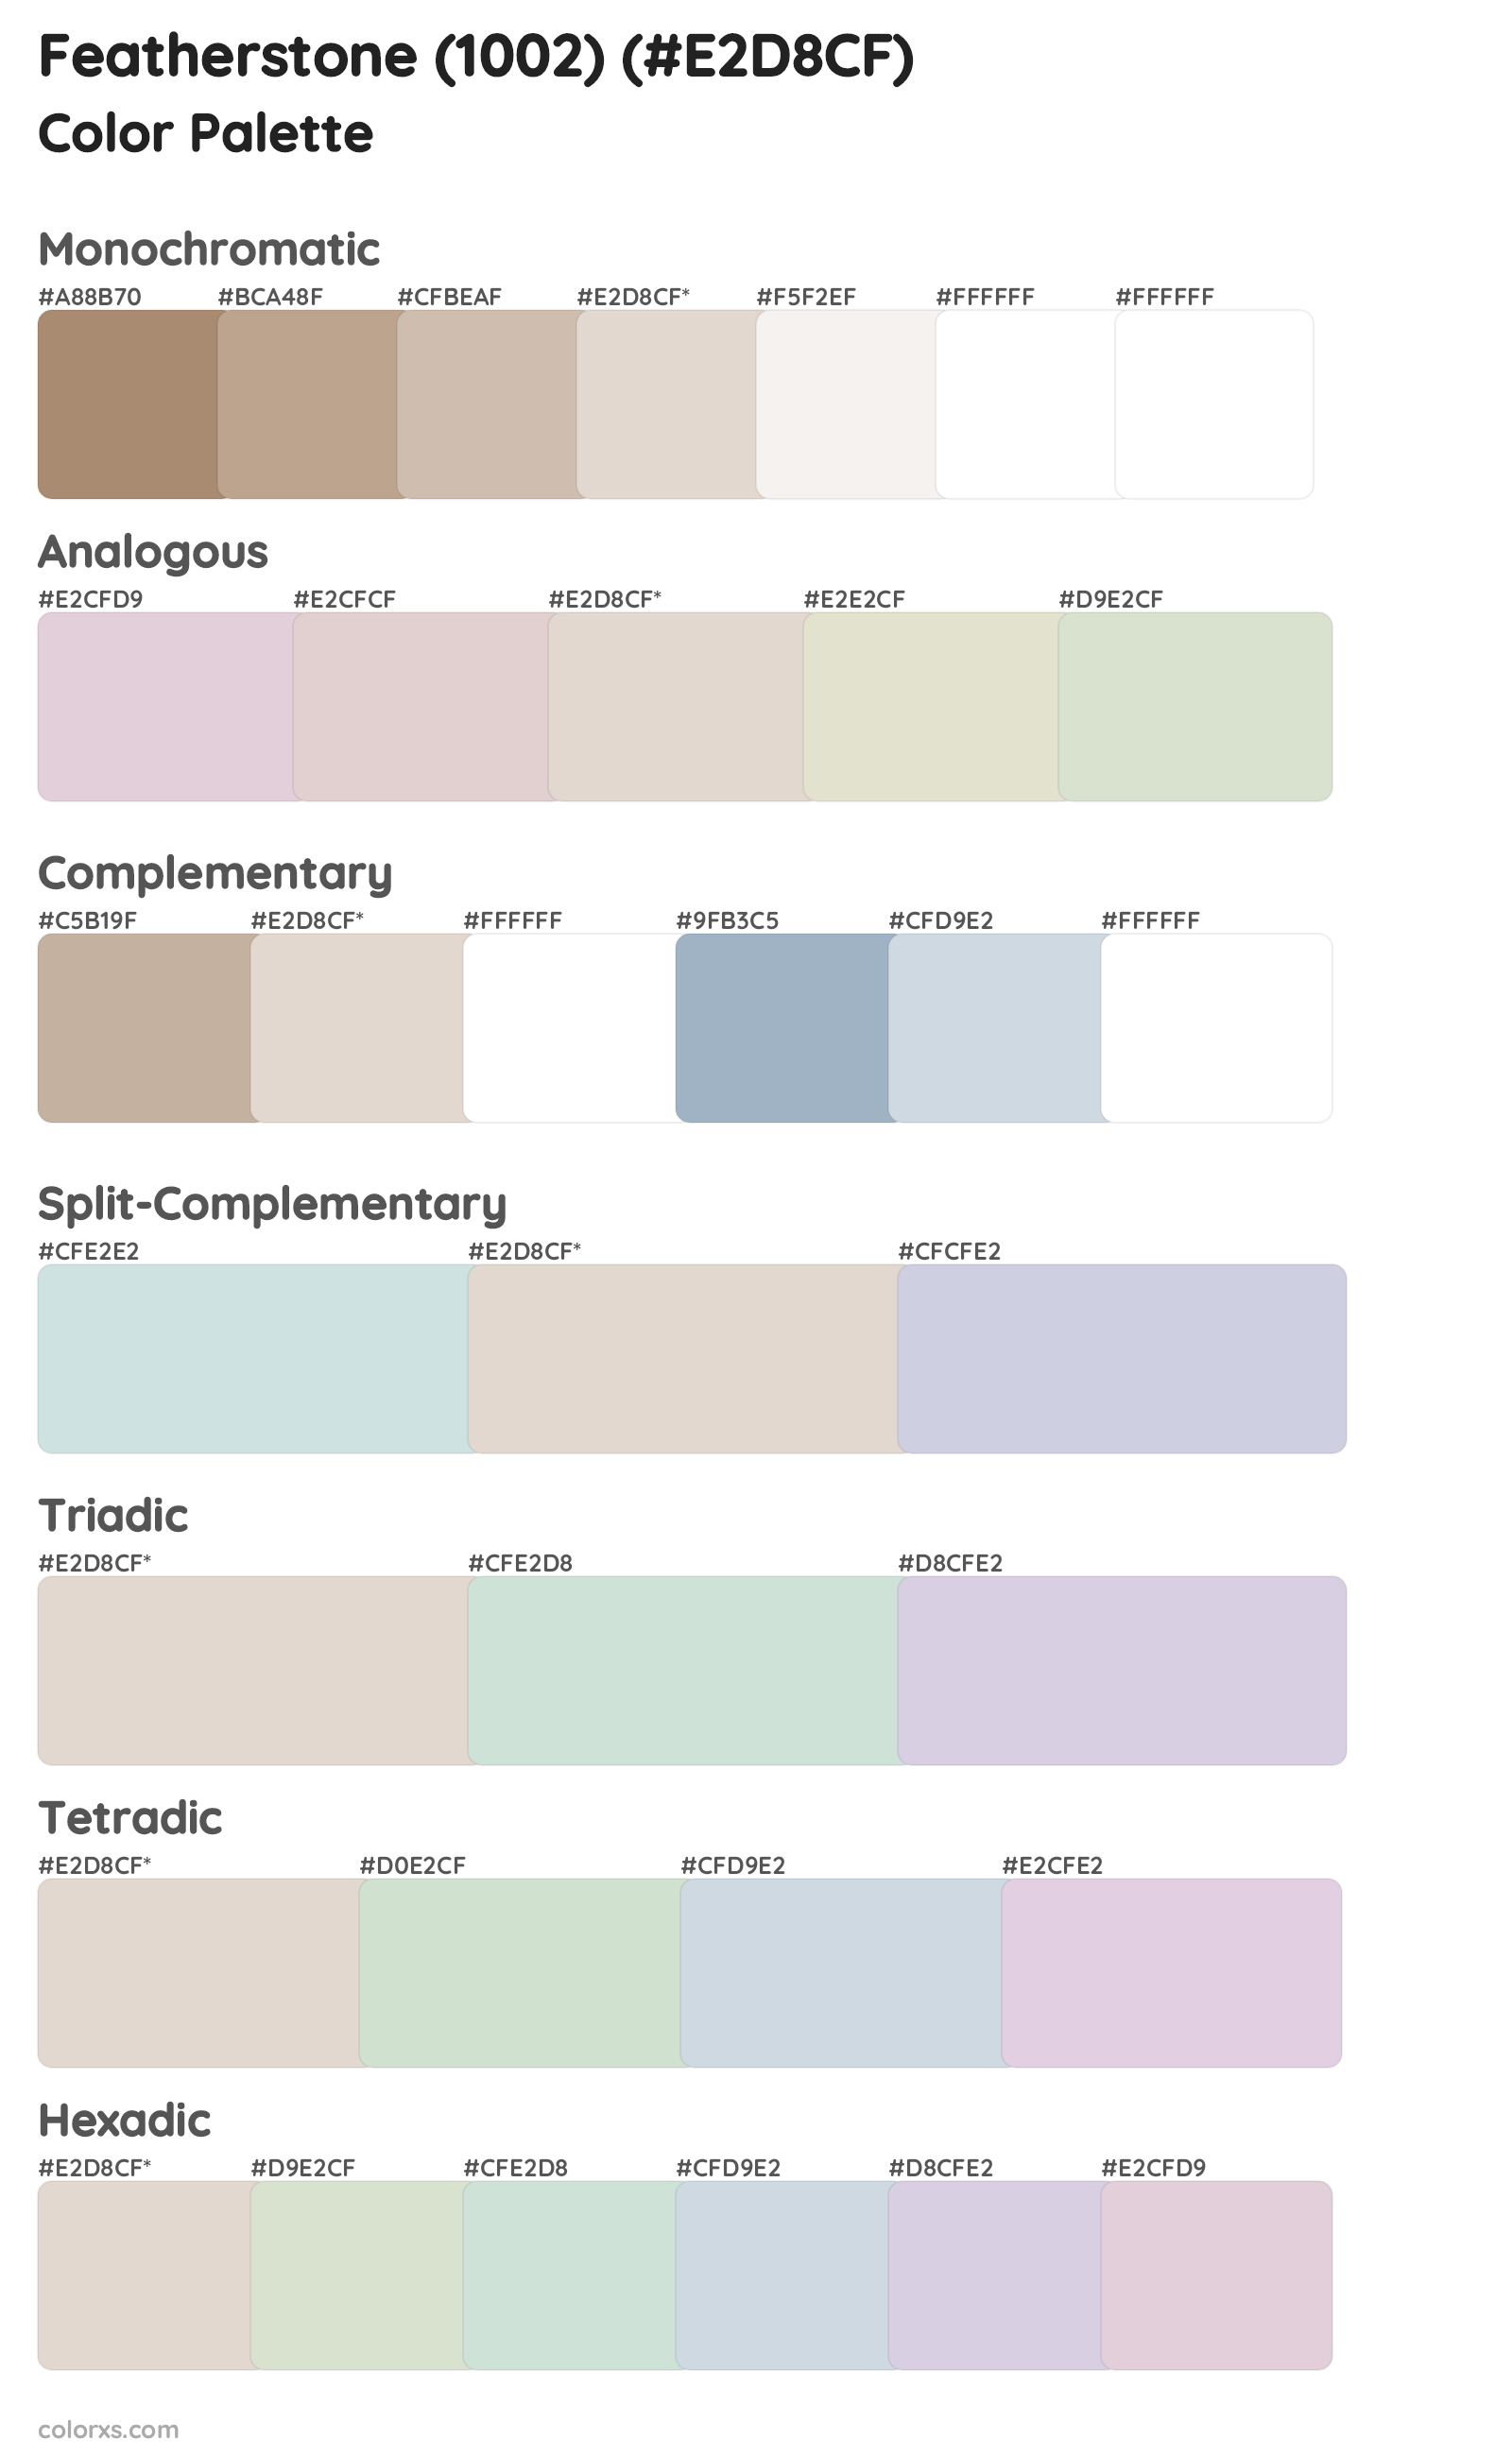 Featherstone (1002) Color Scheme Palettes